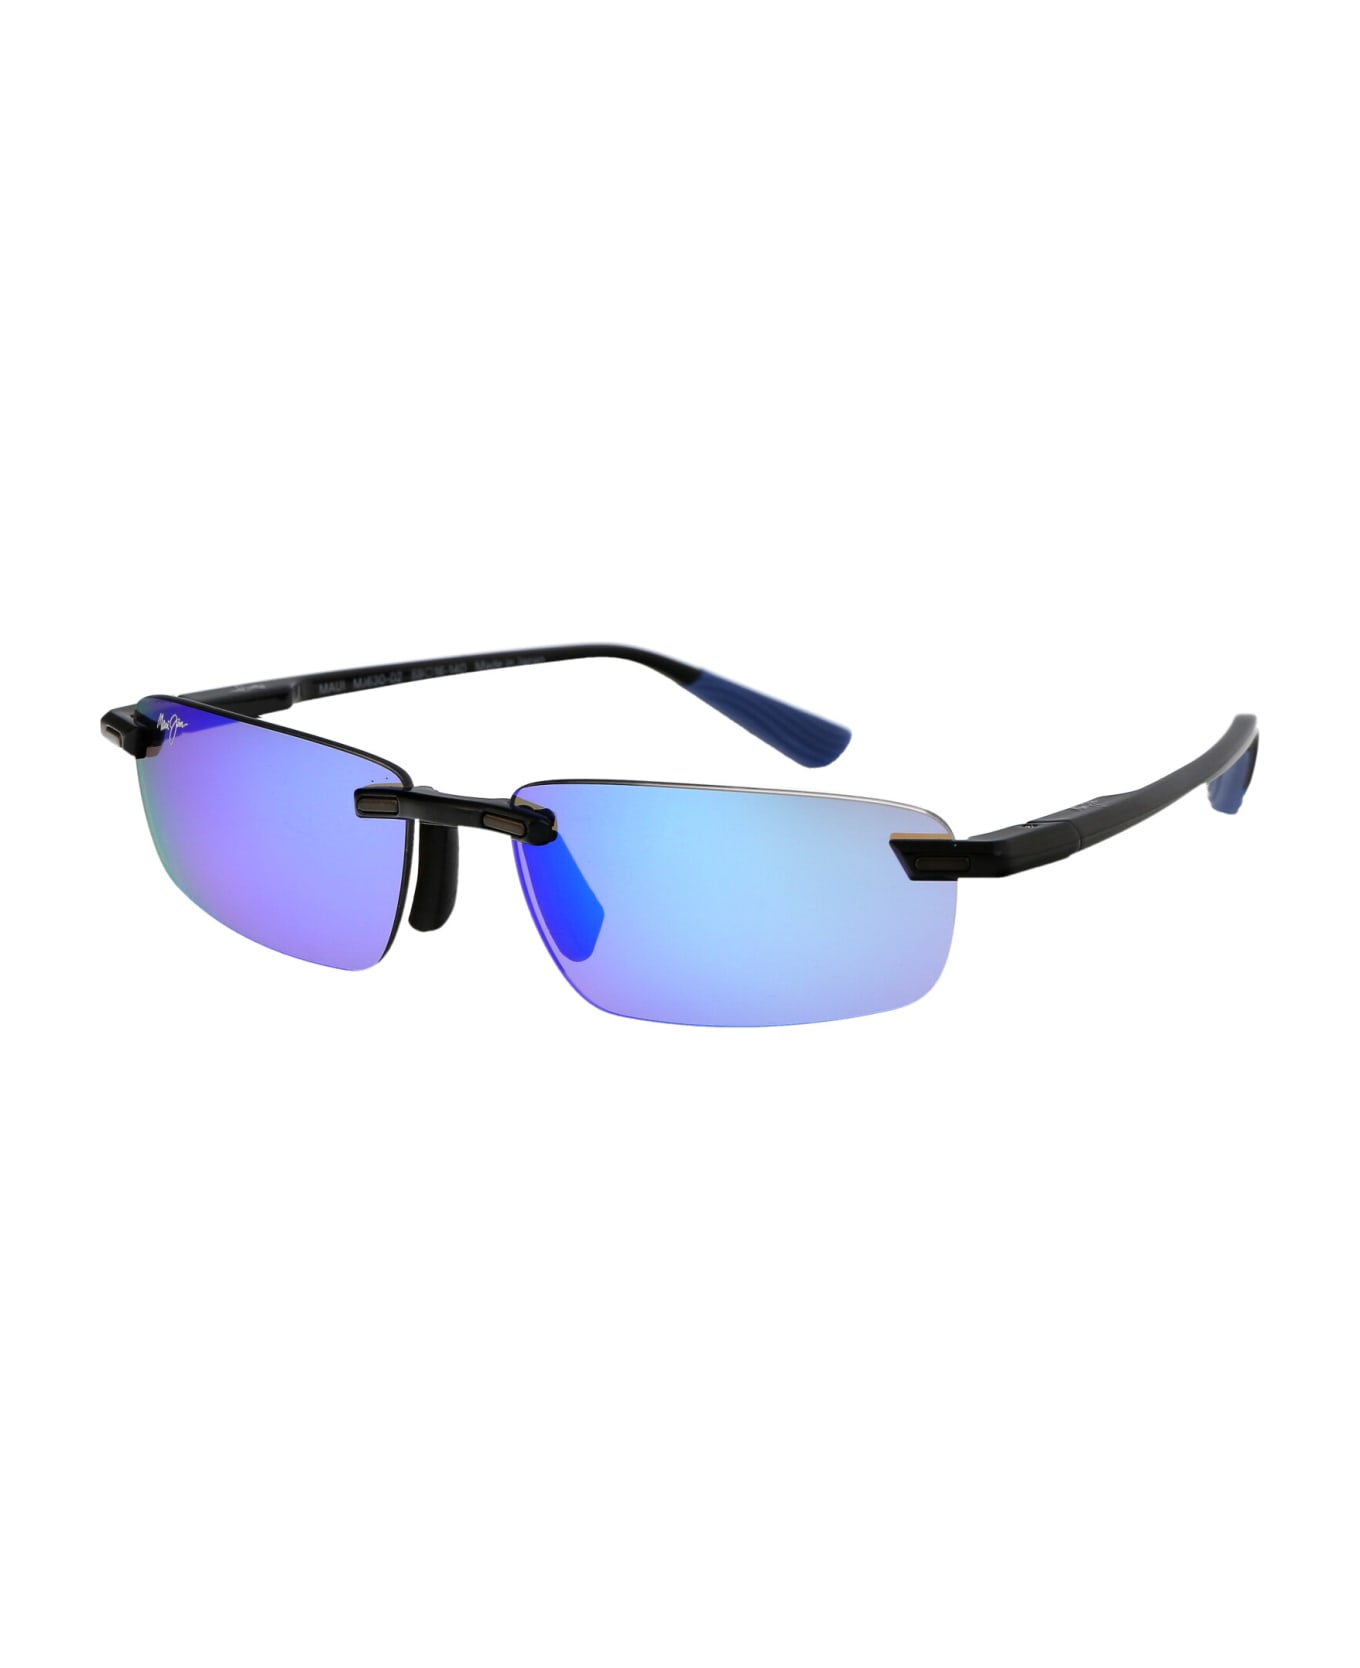 Maui Jim Ilikou Sunglasses - 02 BLUE HAWAII ILIKOU SHINY BLACK W/ BLUE